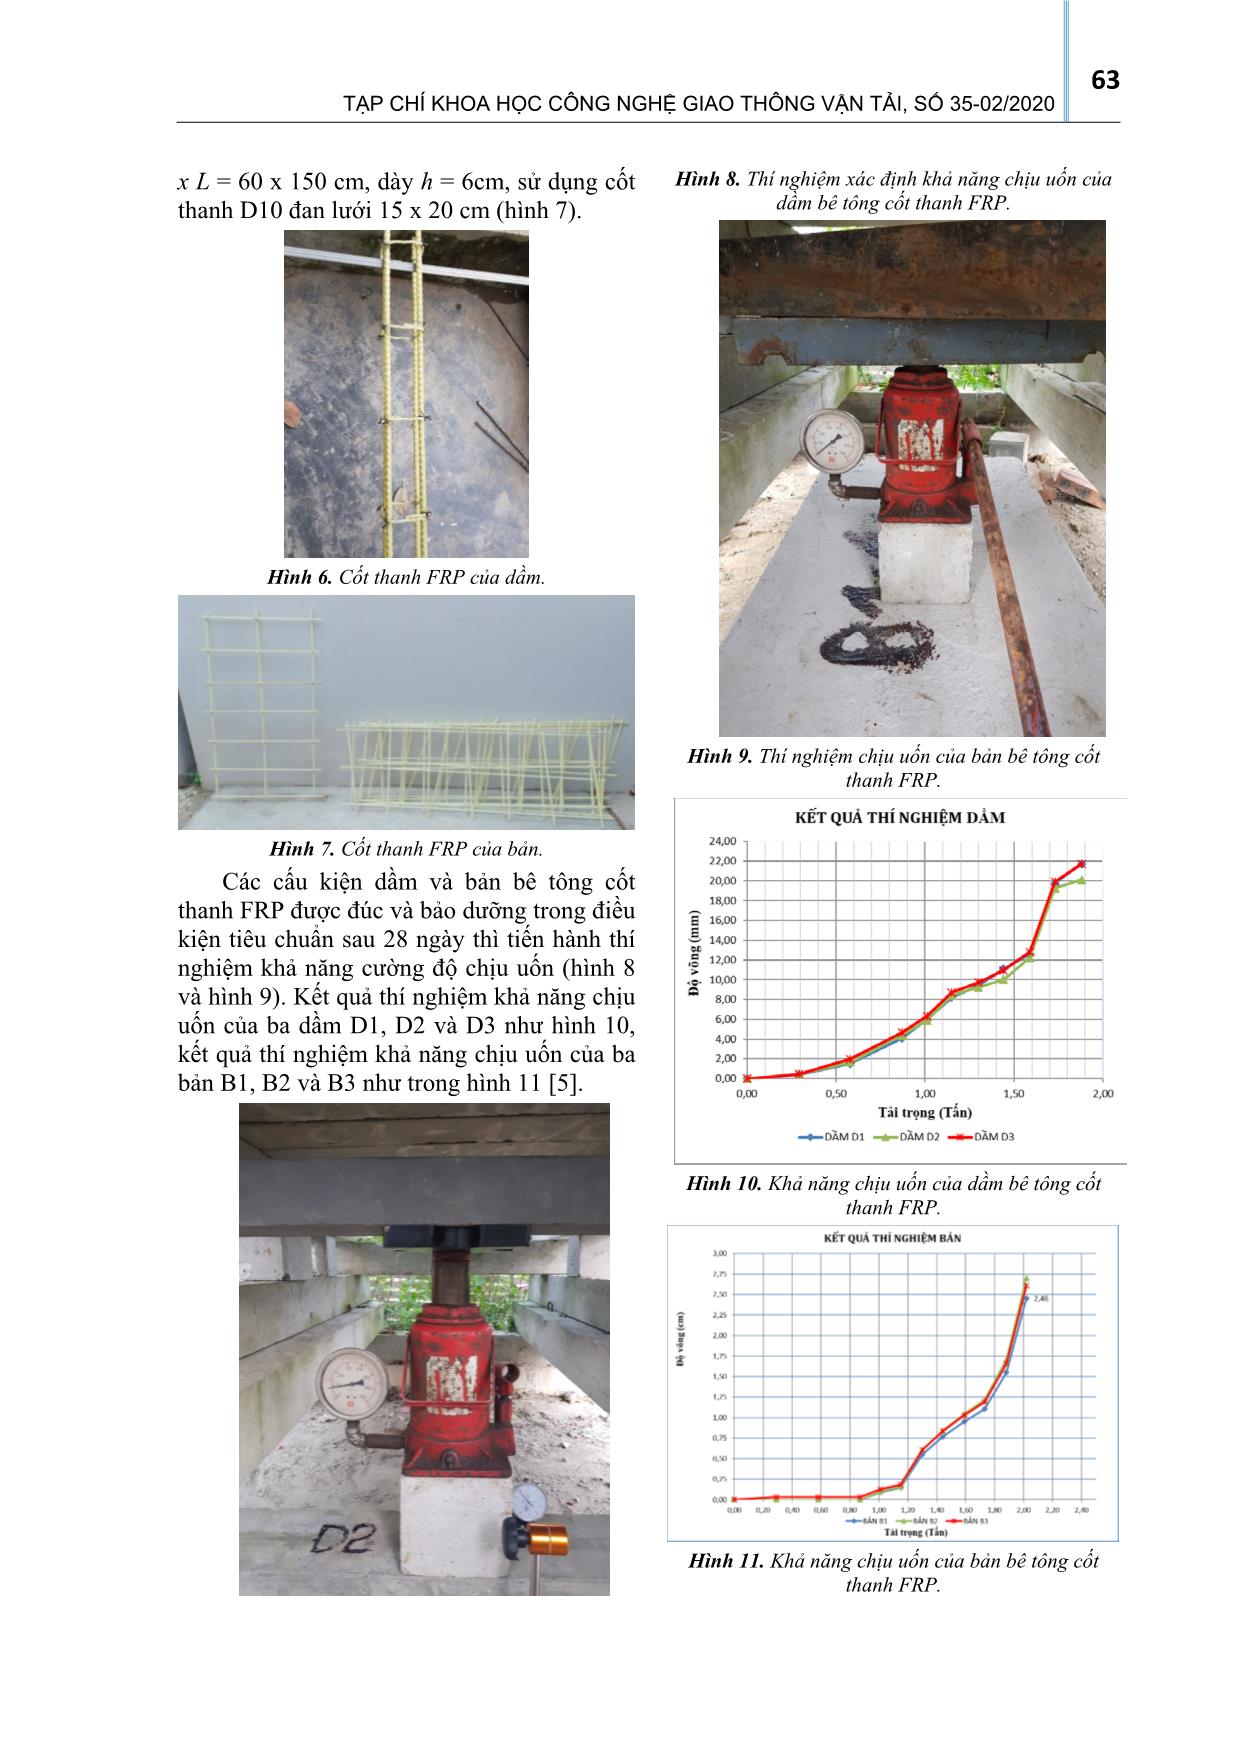 Nghiên cứu thực nghiệm sử dụng cốt thanh frp thay cho cốt thép trong thiết kế cấu kiện của đê biển trang 4